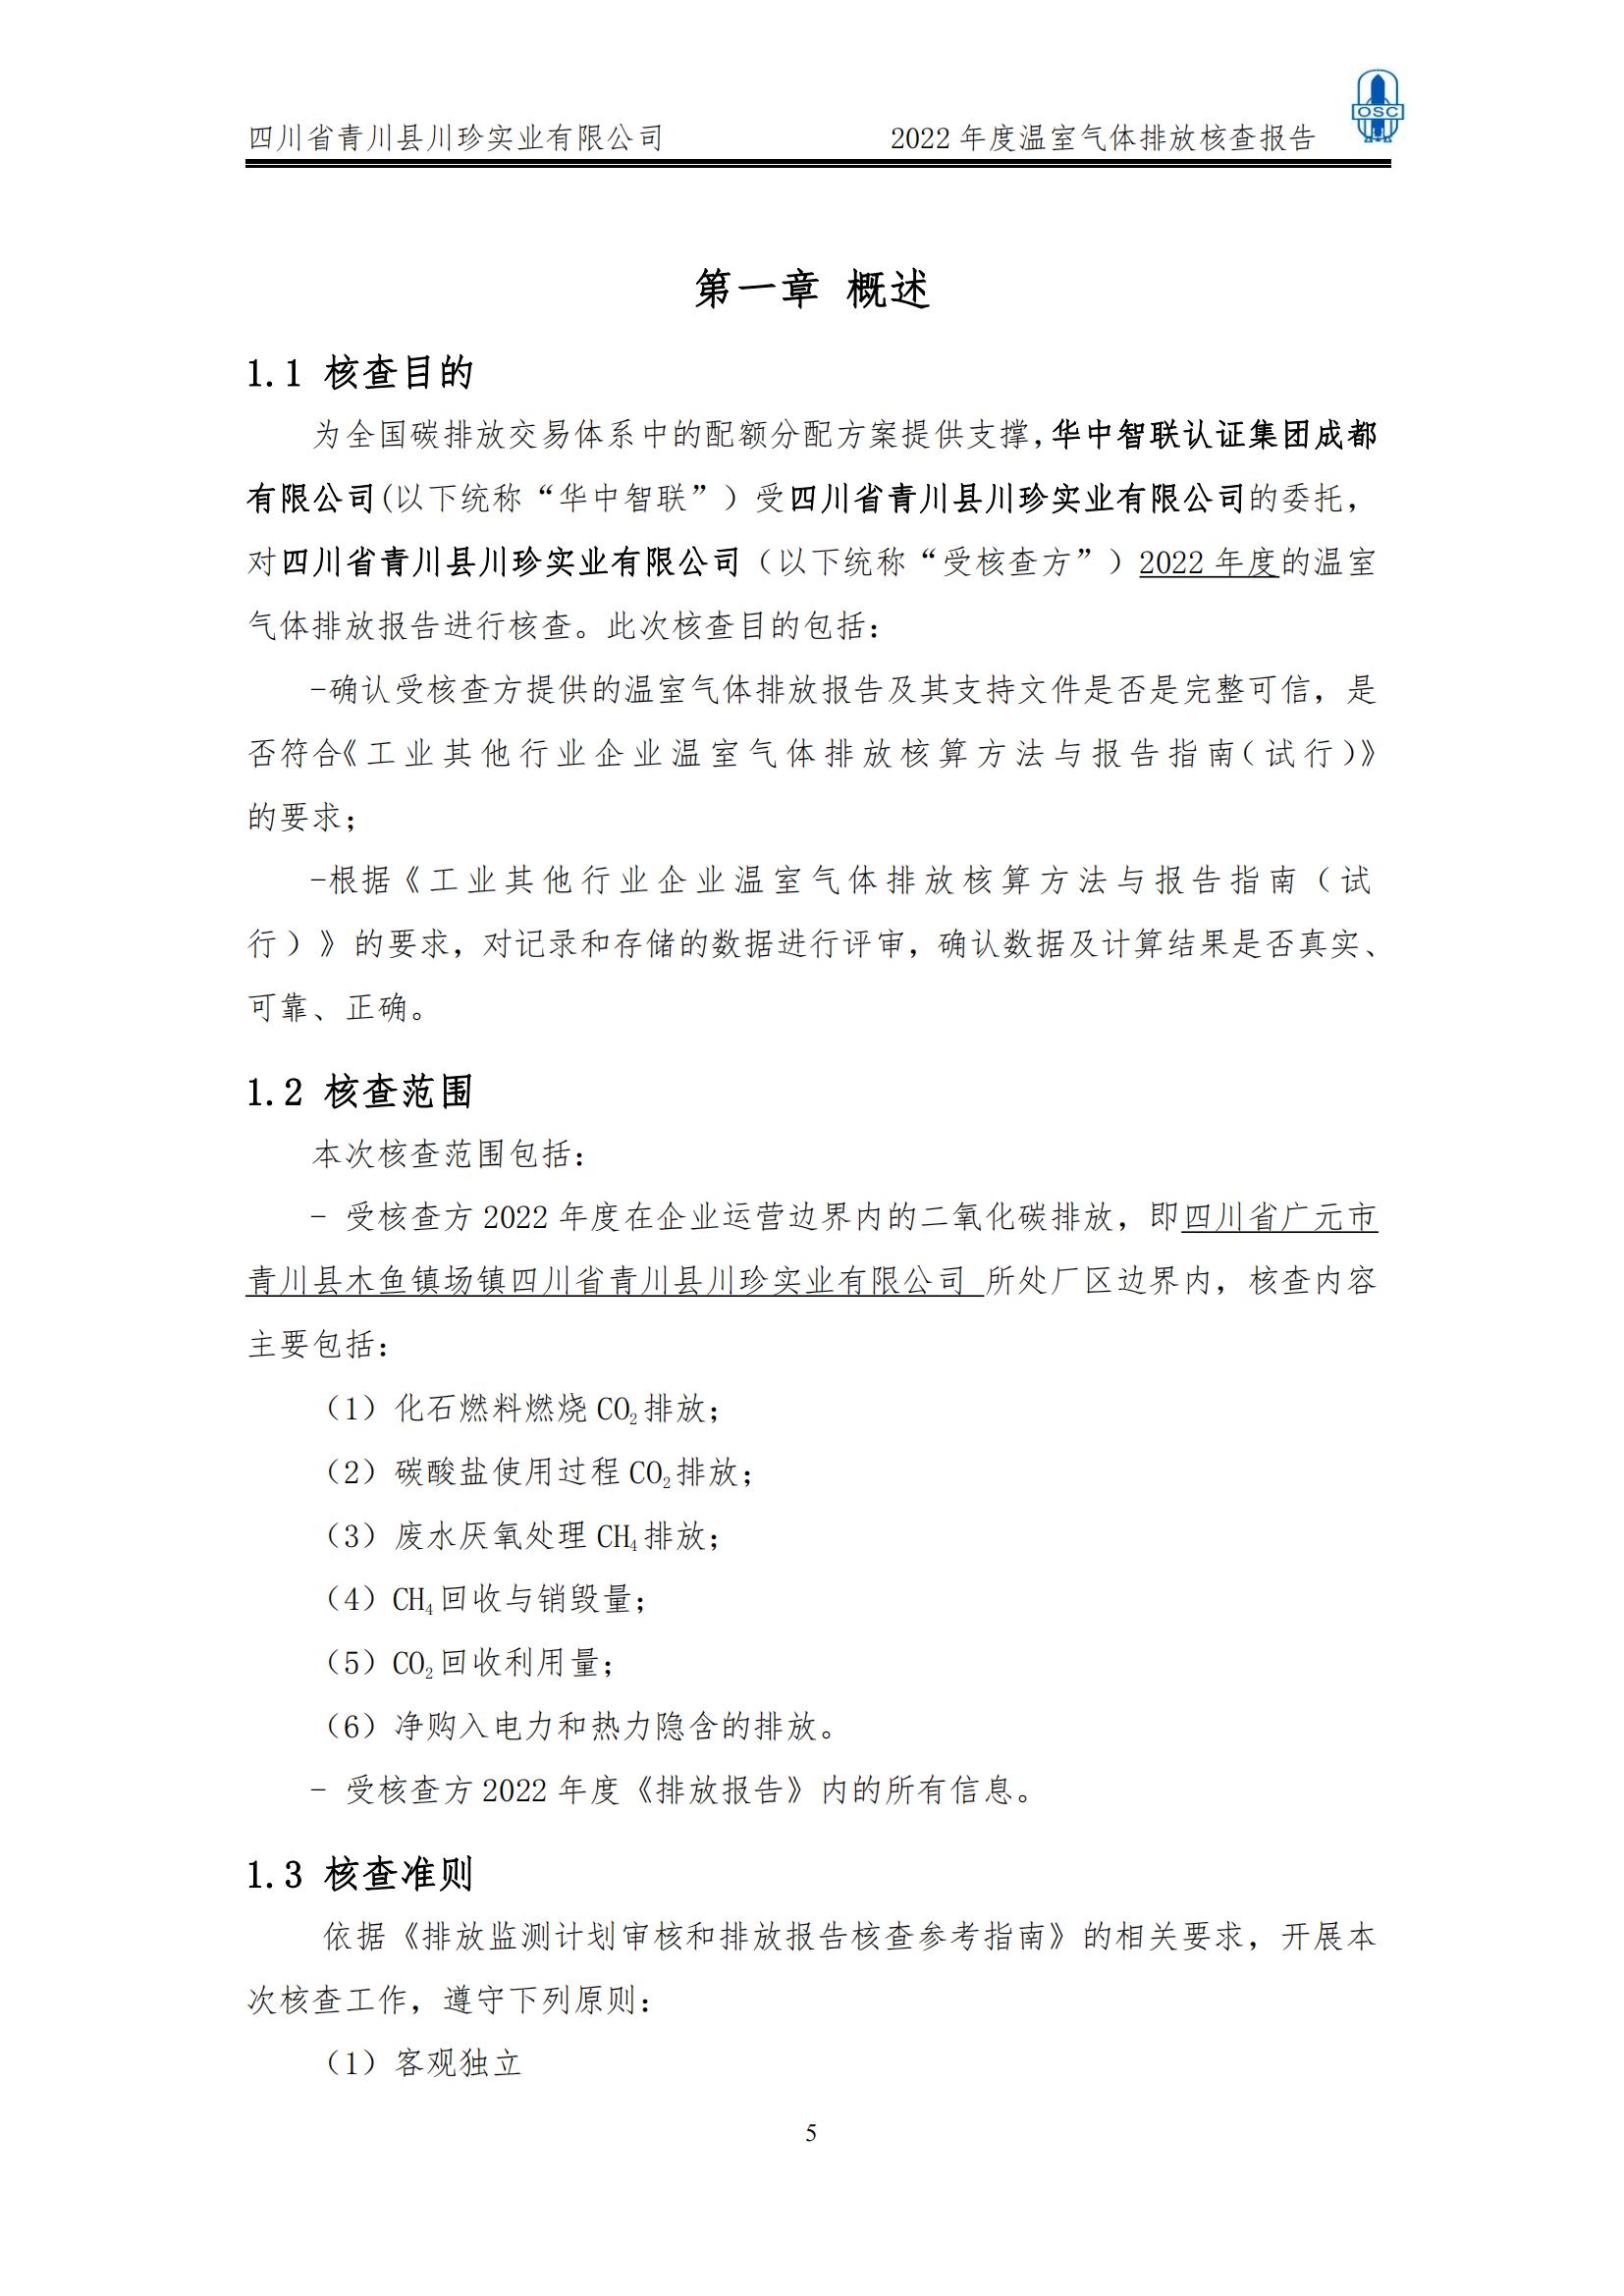 2022年度温室气体核查报告(四川省青川县川珍实业有限公司(图6)